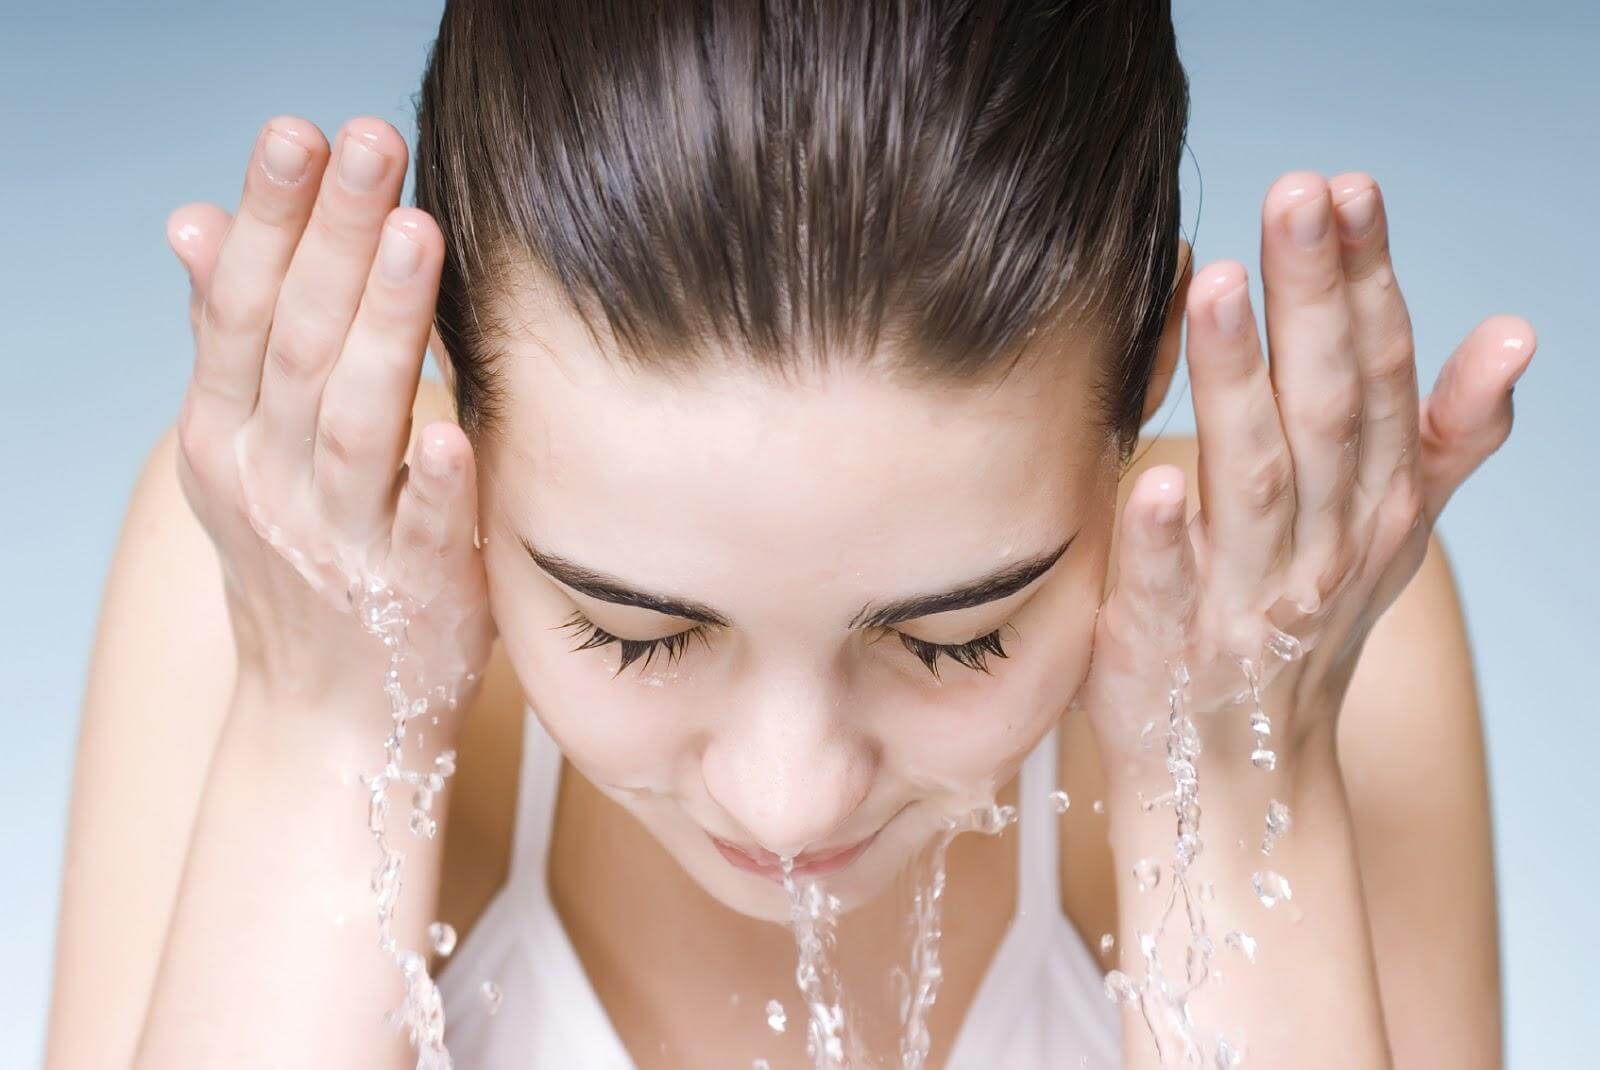 Bạn cần rửa mặt hai lần một ngày với sữa rửa mặt để loại bỏ những tích tụ dầu và bụi bặm trên da